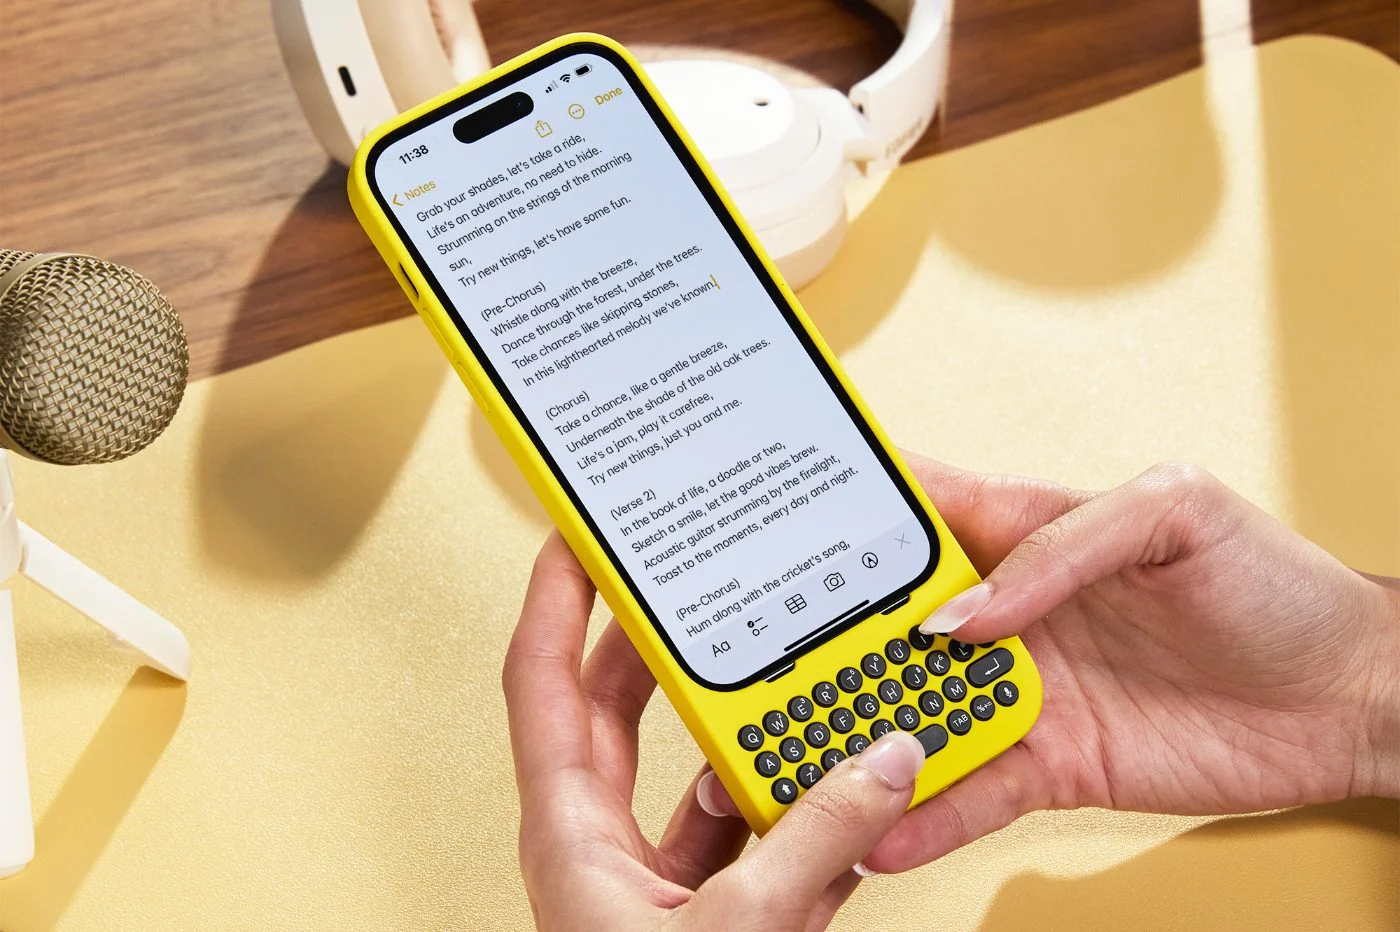 Si vous avez adoré le Blackberry, cette coque d'iPhone est faite